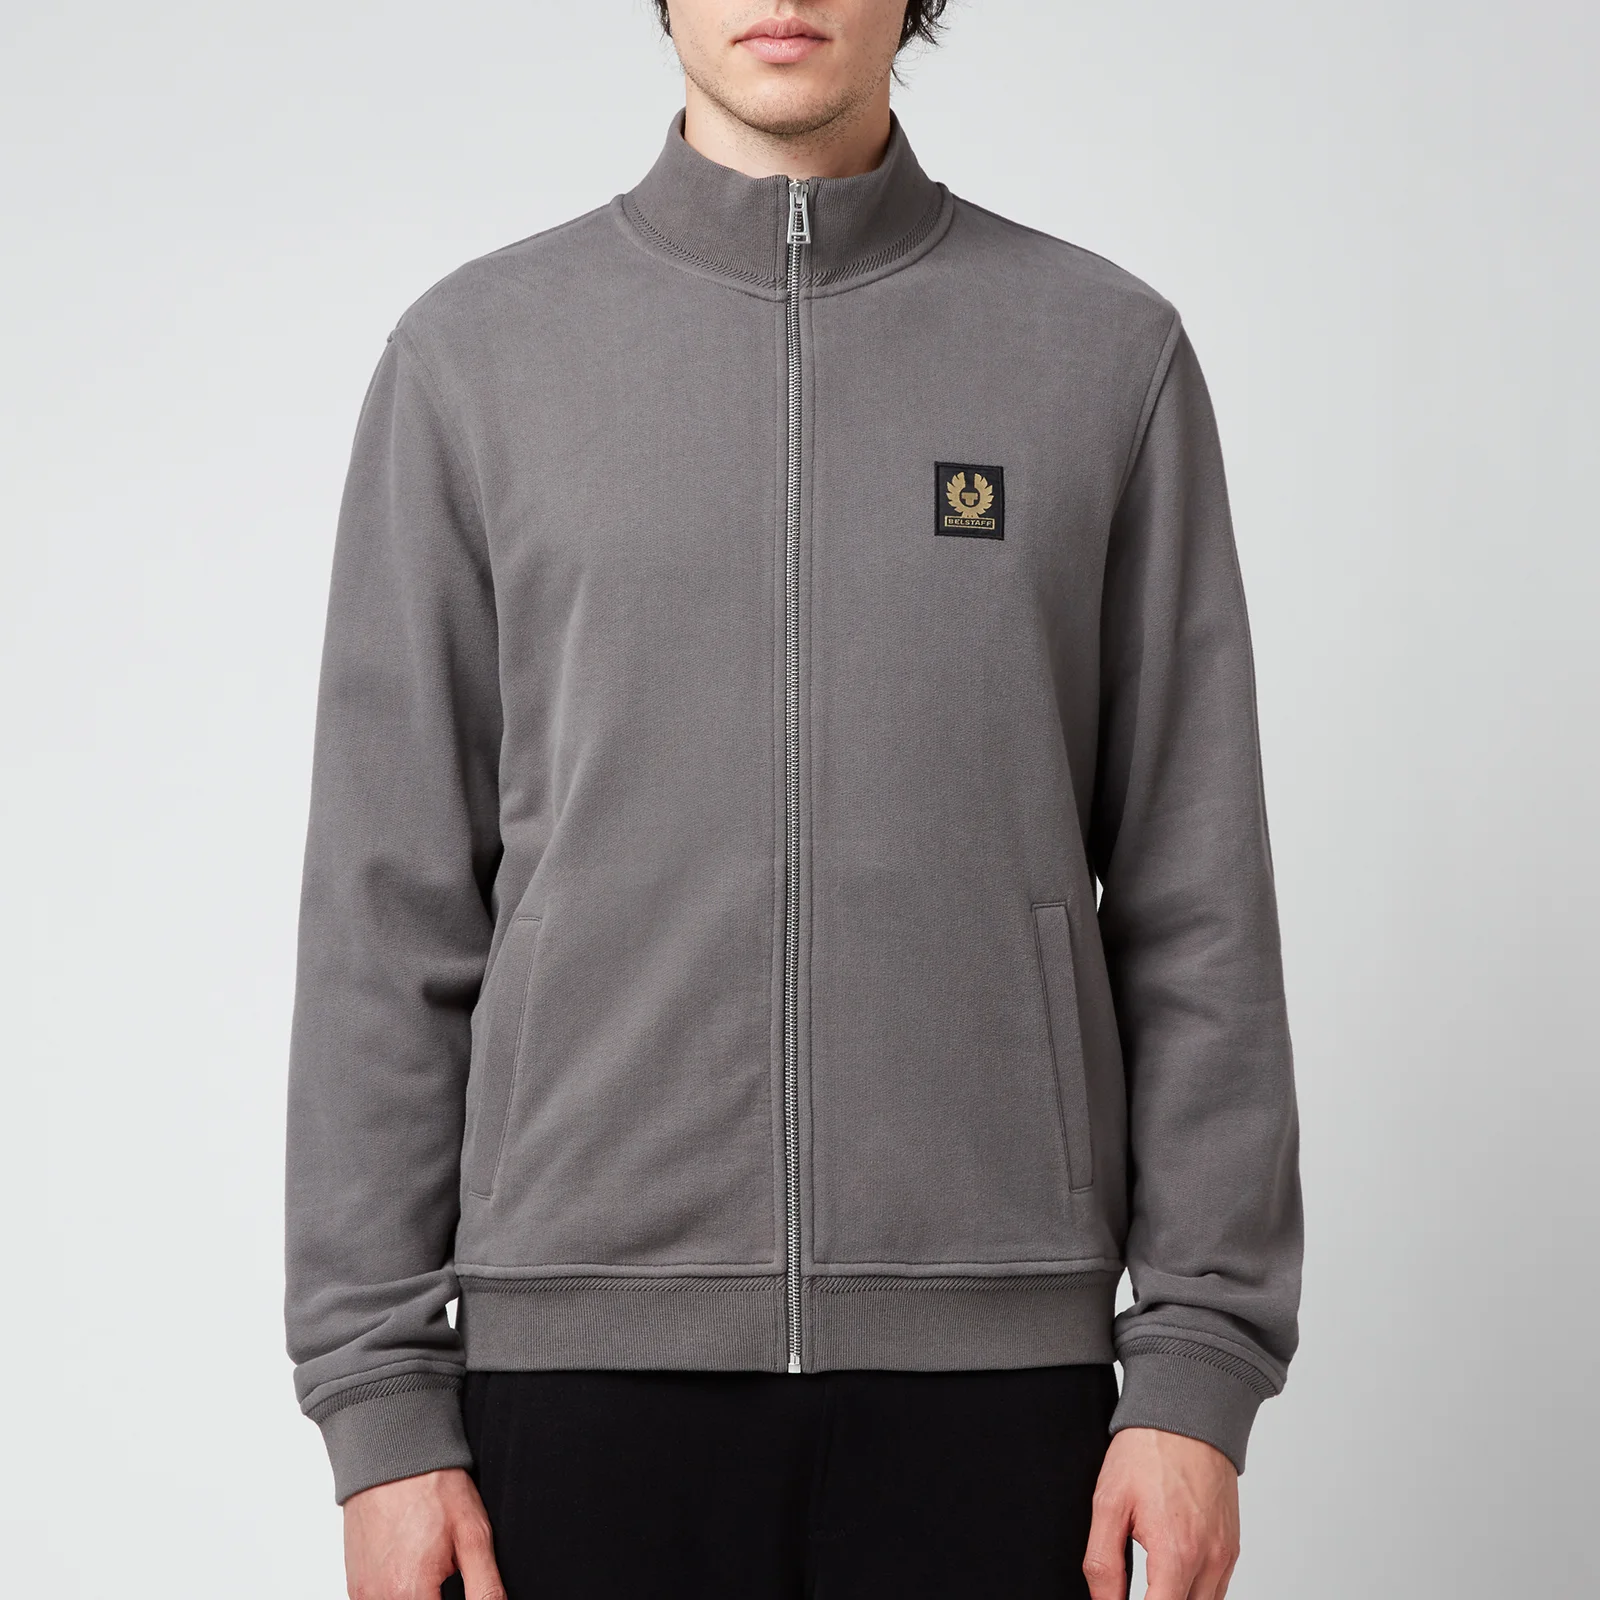 Belstaff Men's Zip-Through Sweatshirt - Granite Grey Image 1